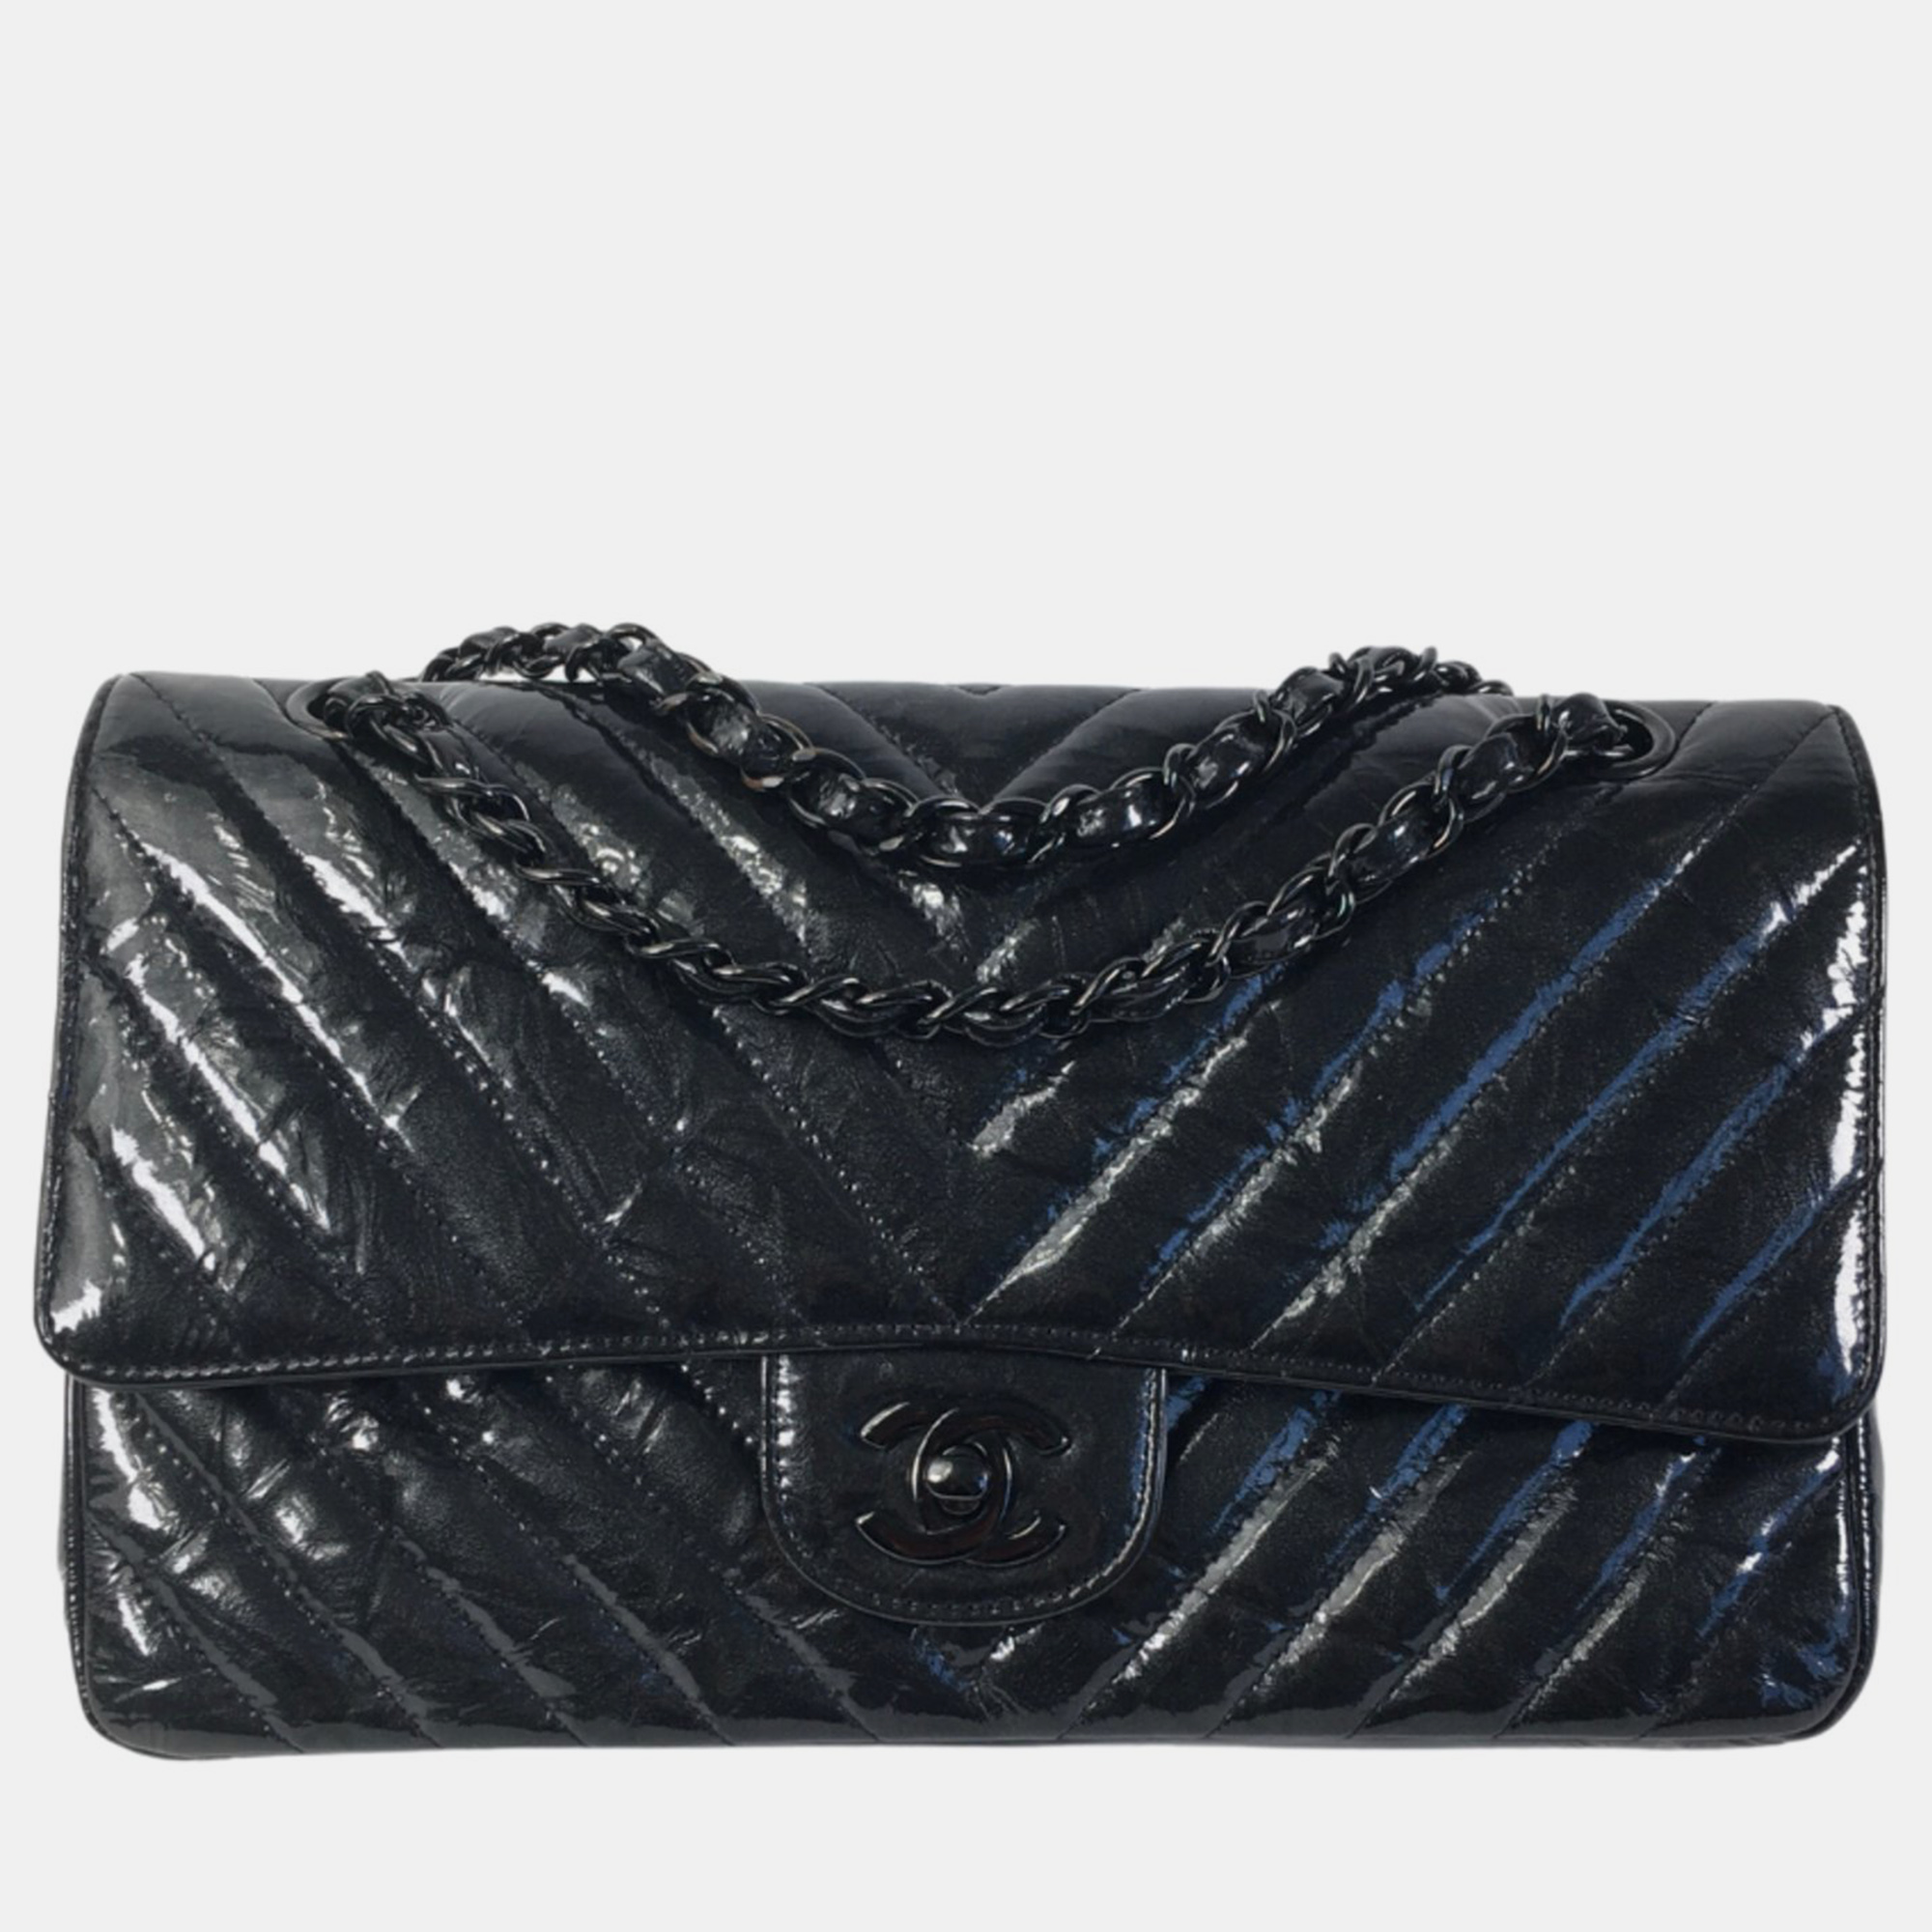 

Chanel Black Patent Leather Medium Classic Double Flap Shoulder Bag